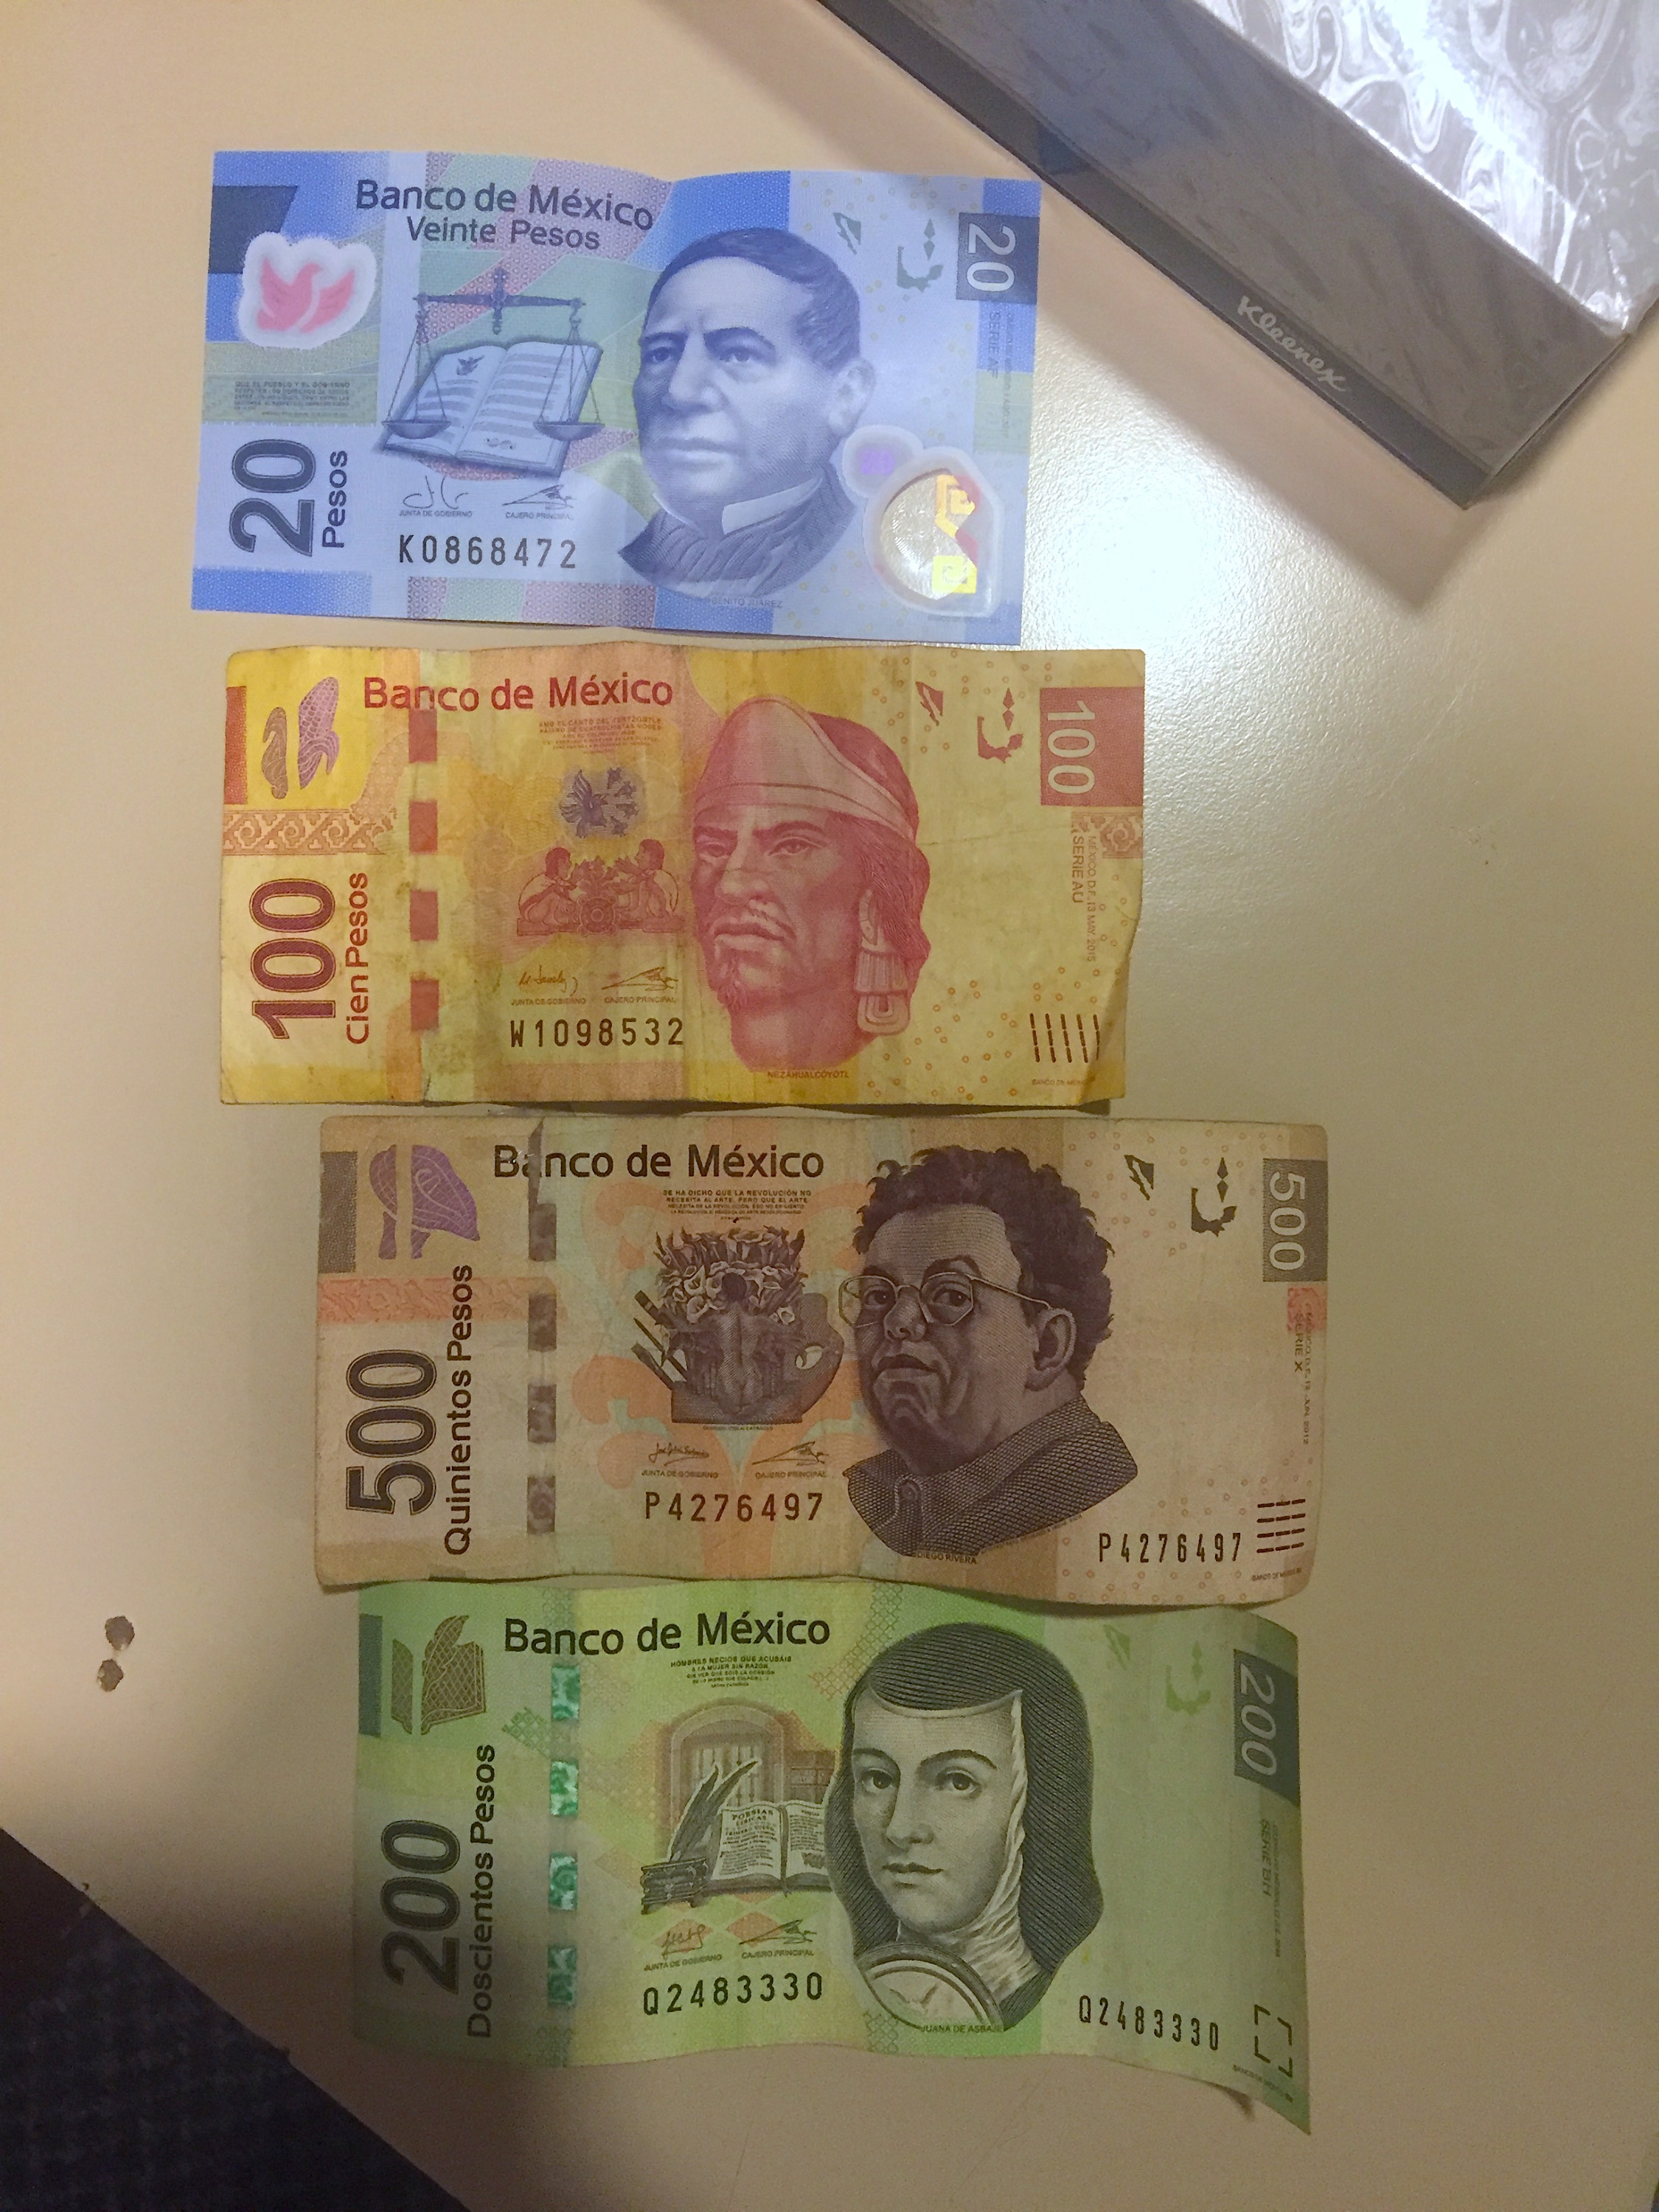 А это местная валюта, песо 